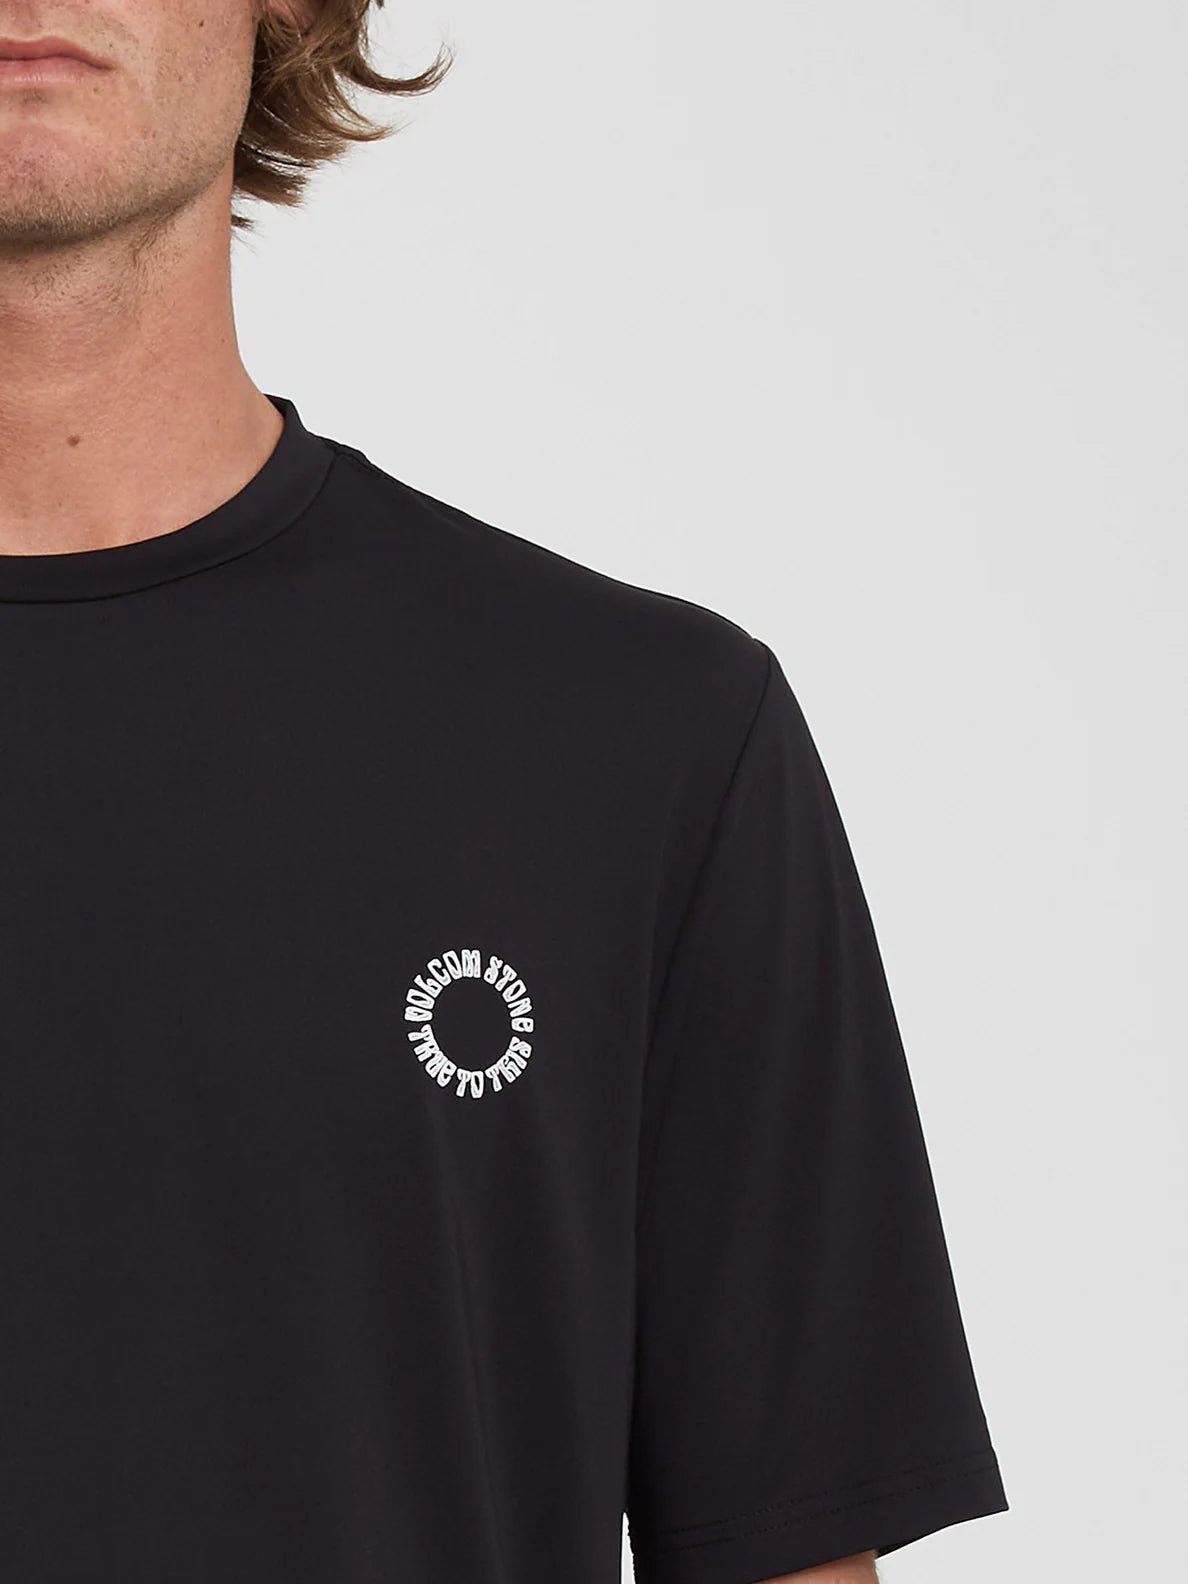 Camiseta Protectora Volcom Faulter - Black | Camisetas de hombre | Camisetas manga corta de hombre | Volcom Shop | surfdevils.com